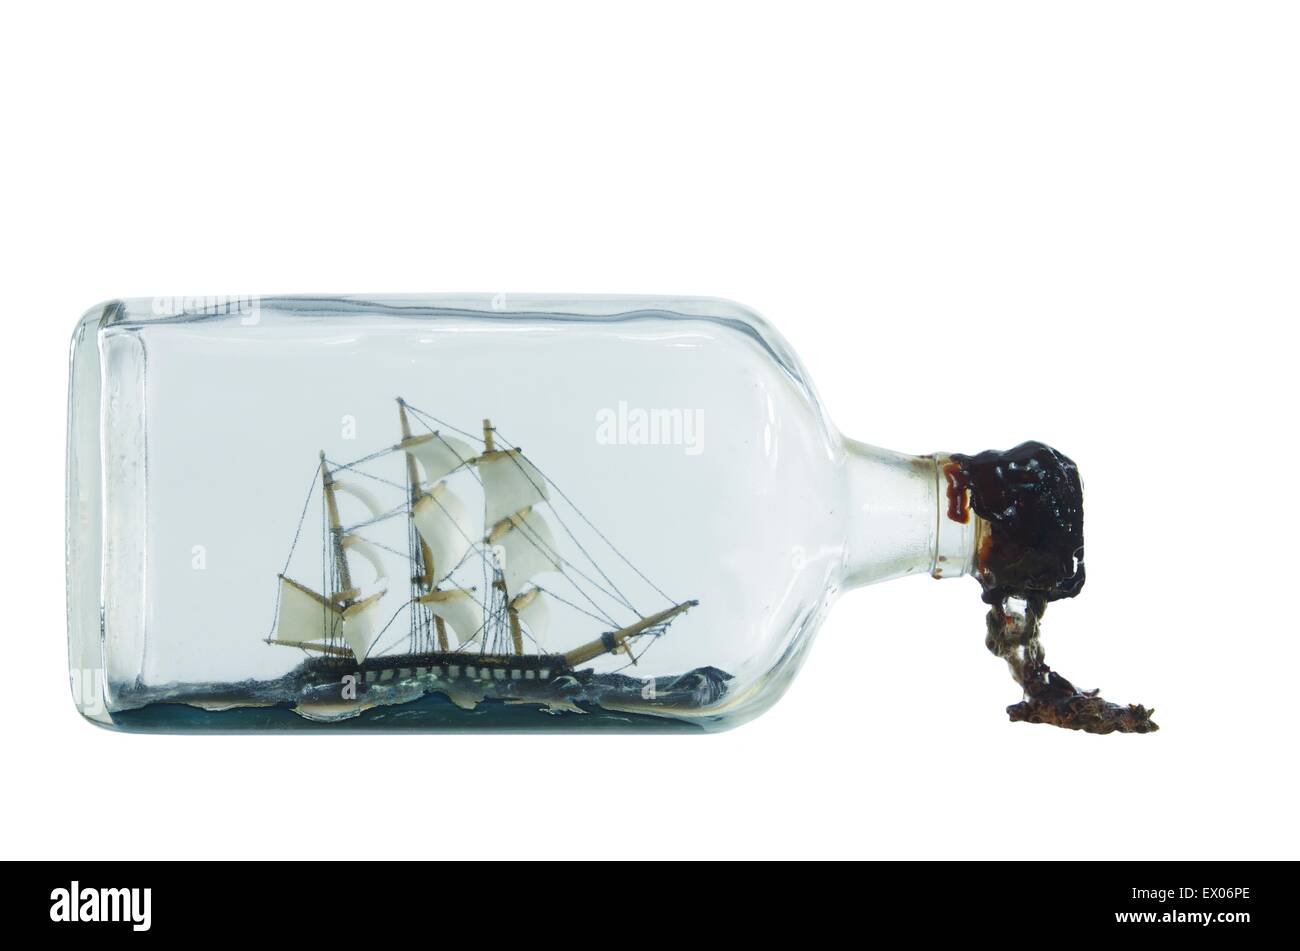 En buque sailcloth cerrada con corcho botella Foto de stock